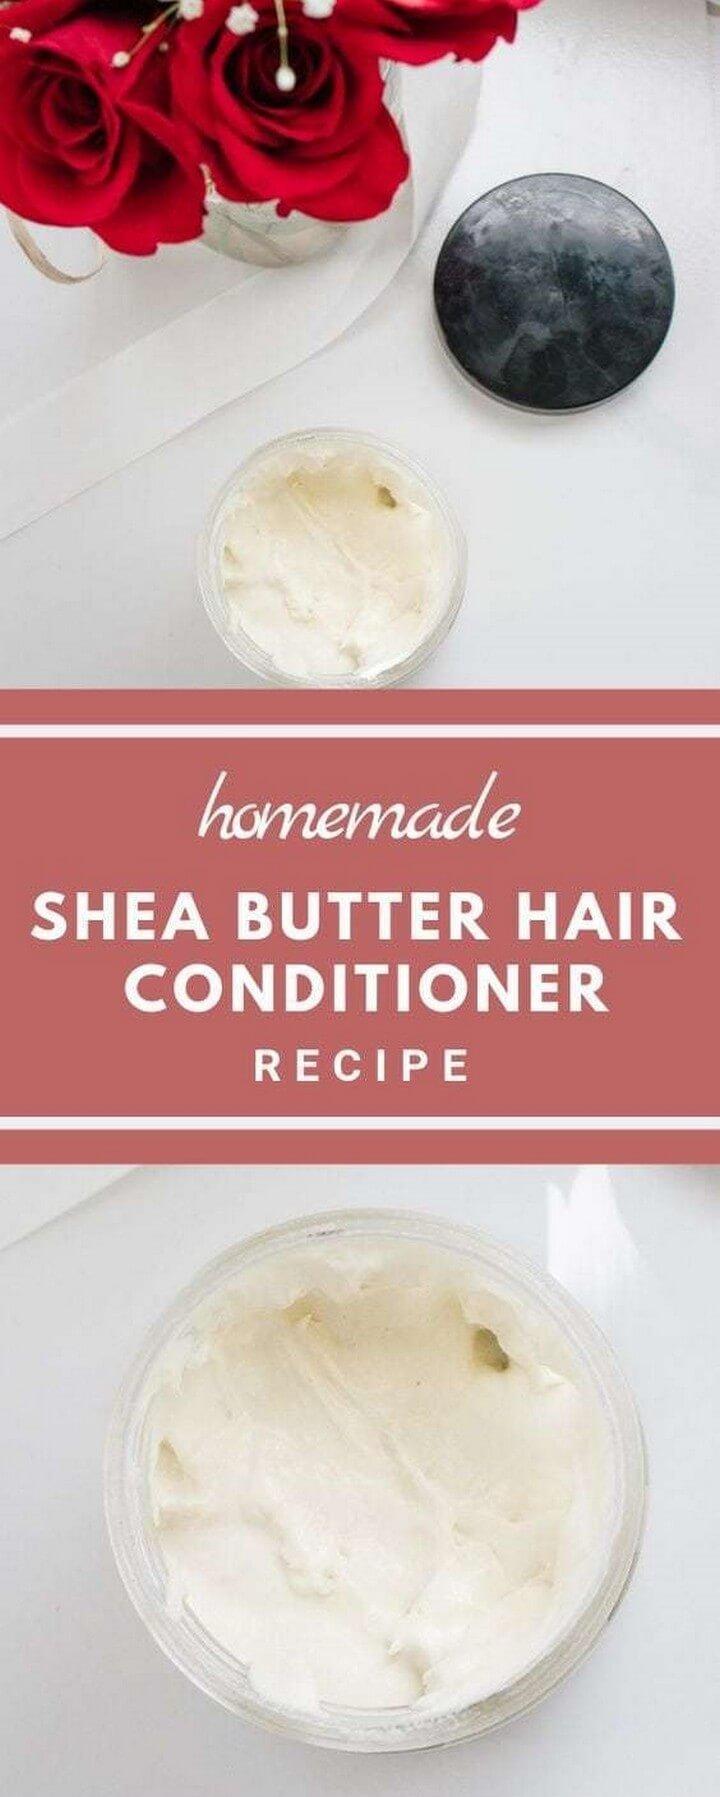 DIY Shea Butter Hair Conditioner Recipe, shea butter recipes, shea butte, shea butter recipes for hair, shea butter recipes for skin, shea butter recipes for hair and skin, shea butter recipes for natural hair, shea butter recipes body shop, shea butter recipes for body, shea butter recipes food, shea butter recipes for face, shea butter recipes with essential oils, shea butter recipes for psoriasis, shea butter recipes for glowing skin, shea butter recipes for dry skin, shea butter recipes for locs, shea butter recipes for babies, shea butter recipes for face creams, shea butter recipes for skin care, shea butter recipes for eczema, shea butter recipes for hair growth, shea butter recipes for stretch marks, shea butter recipes for acne, shea butter recipes anti aging, african shea butter recipes, shea butter soap recipes melt and pour, dr axe shea butter recipes, recipes for shea butter and essential oils, shea and cocoa butter recipes for skin, raw african shea butter recipes, shea butter melt and pour recipes, shea butter and almond oil recipes for hair, shea butter and coconut oil recipes, shea butter recipe book, shea butter beauty recipes, shea butter balm recipe, shea butter beard recipe, shea butter bar recipe, shea butter beeswax recipe, shea butter homemade lip balm, shea butter soap base recipes, shea butter lip balm recipes, shea butter lotion bar recipes, shea butter lip balm recipe without beeswax, shea butter bath bomb recipe, body butter recipe shea, shea butter body balm recipe, shea butter shampoo bar recipe, shea butter beard balm recipe, shea butter lip balm recipe without wax, shea butter body bar recipe, shea butter homemade cream, shea butter cooking recipes, shea butter cream recipes, shea butter homemade conditioner, shea butter cosmetic recipes, shea butter conditioner recipe, shea butter chapstick recipe, shea butter candle recipe, shea butter cream recipe for skin, shea butter chocolate recipe, shea butter cleanser recipe, shea butter cream recipe for face, shea butter cream recipe for natural hair, shea butter chicken recipe, shea butter recipes for cellulite, shea butter soap recipe cold process, body butter recipe shea coconut, body butter recipe shea cocoa, shea butter homemade face cream, shea butter recipes diy, shea butter homemade deodorant, shea butter deodorant recipe, shea butter lotion recipe diy, shea butter recipe for dry hair, diy shea butter recipes for dry skin, best diy shea butter recipes, doterra diy shea butter recipes, shea butter recipe eczema, shea butter emulsion recipe, shea butter lotion recipe easy, shea butter vitamin e recipe, shea butter baby eczema recipe, easy shea butter recipes, edible shea butter recipe, raw shea butter for eczema recipes, shea butter recipes for low porosity hair, shea butter glycerin recipe, shea butter grapefruit recipe, shea butter hair growth recipes, shea butter lip gloss recipe, shea butter shower gel recipe, shea butter hair gel recipe, shea butter recipes hair, shea butter homemade hair moisturizer, shea butter homemade hand cream, shea butter homemade hair mask, shea butter home recipes, shea butter honey recipe, shea butter hand cream recipe, shea butter soap recipe hot process, whipped shea butter recipe hair, shea butter moisturizer recipe hair, shea butter homemade recipes, raw shea butter hair recipes, shea butter recipe for 4c hair, shea butter homemade lotion recipes, shea butter whip recipes natural hair, homemade shea butter recipes for hair, shea butter in homemade soap, shea butter in homemade deodorant, shea butter soap recipe in grams, shea butter homemade leave in conditioner, substitute shea butter in recipe, shea butter recipe lotion, shea butter homemade lotion, shea butter lotion recipe with emulsifying wax, shea butter lipstick recipe, shea butter lotion recipe water, shea butter lube recipe, shea butter lubricant recipe, shea butter lip balm recipe, raw shea butter lotion recipes, shea butter homemade body lotion, shea butter body lotion recipes, shea butter glycerin lotion recipe, whipped shea butter lotion recipe, diytomake.com